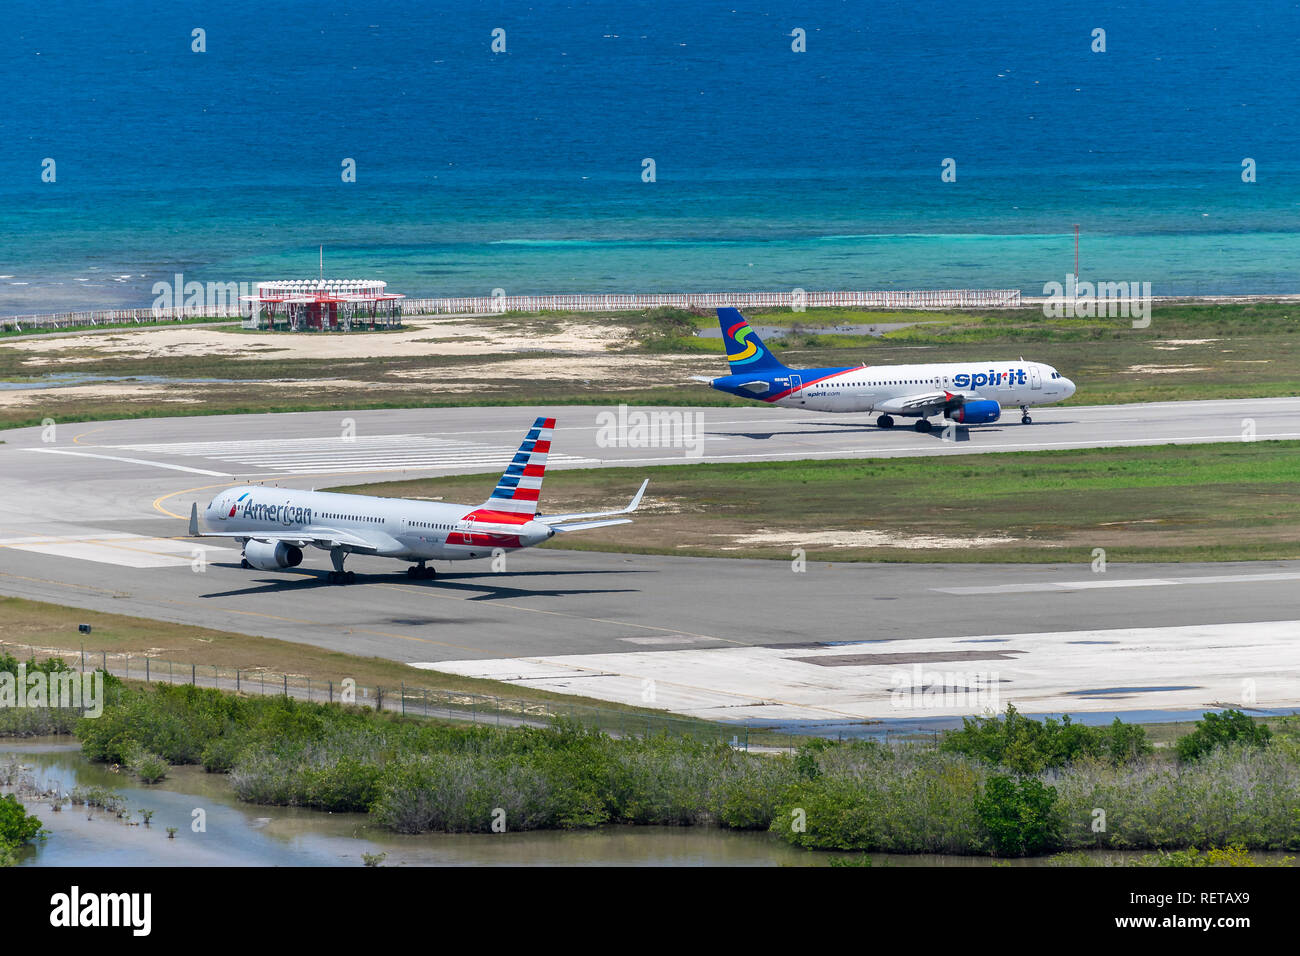 Montego Bay, Giamaica - 27 Marzo 2015: spirito Airlines e American Airlines aeromobili la preparazione per la partenza dall'Aeroporto Internazionale di Sangster Foto Stock